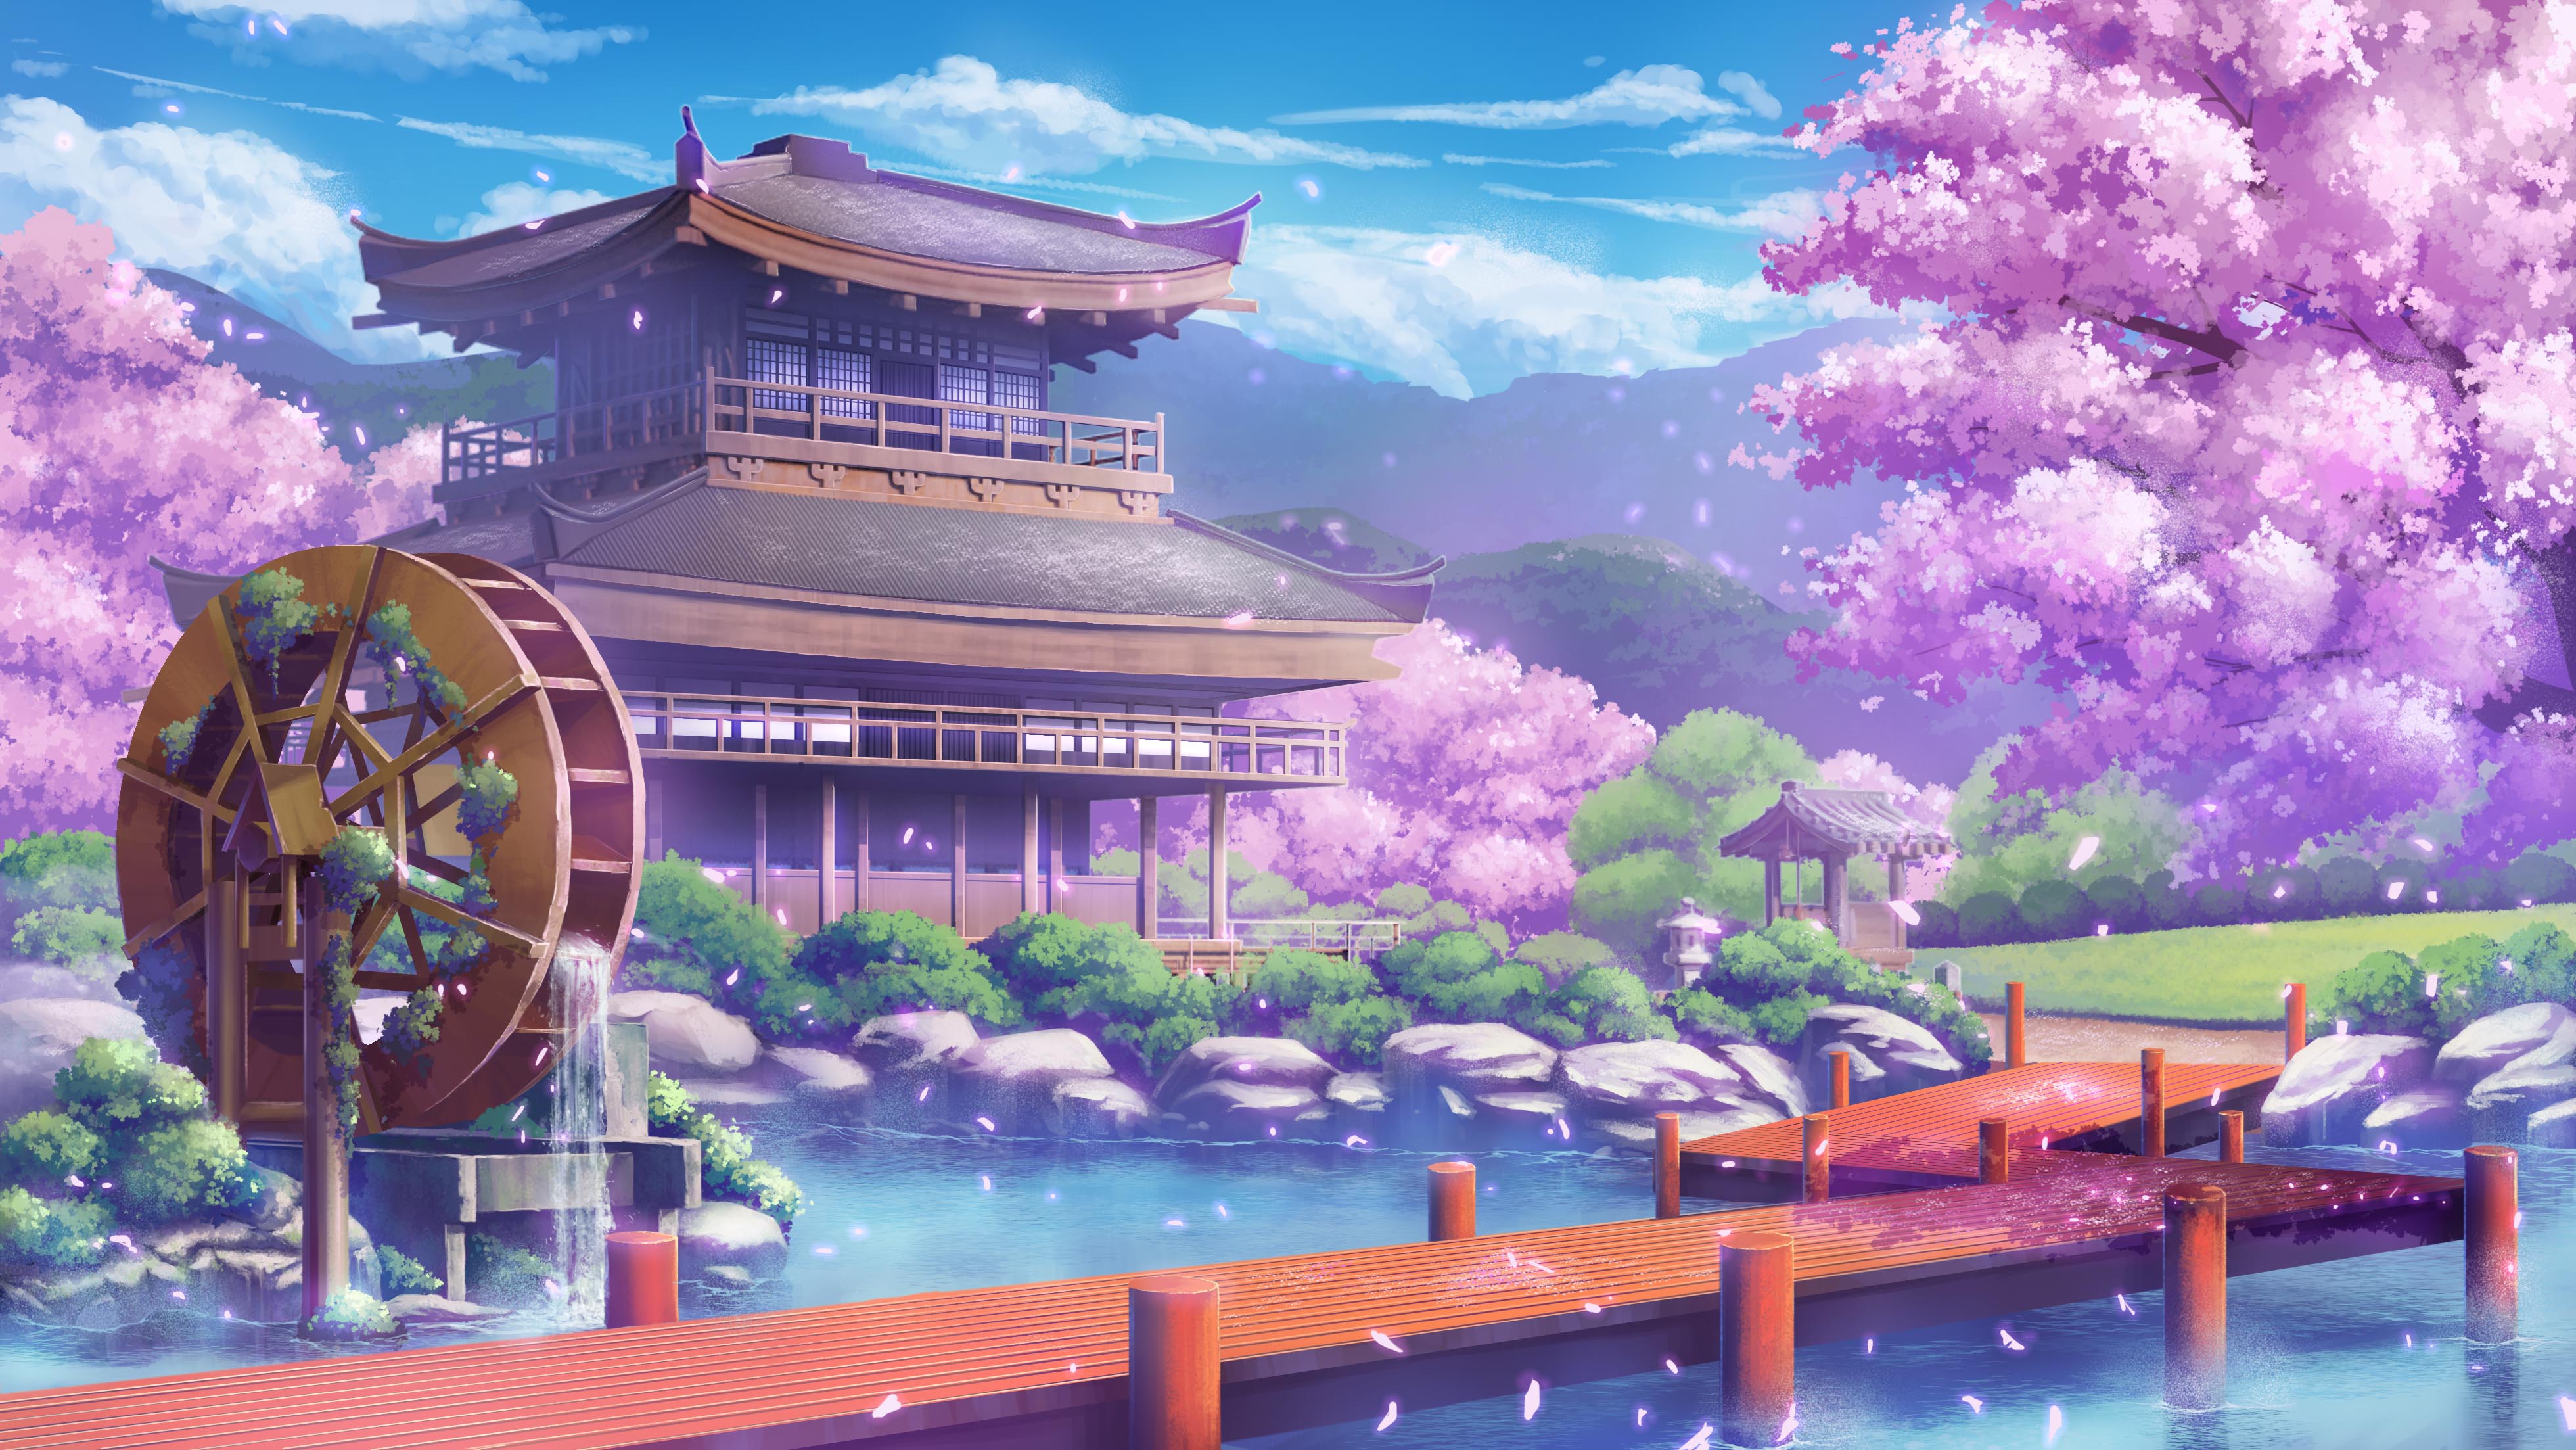 Free download wallpaper Anime, Water, Sakura, House on your PC desktop